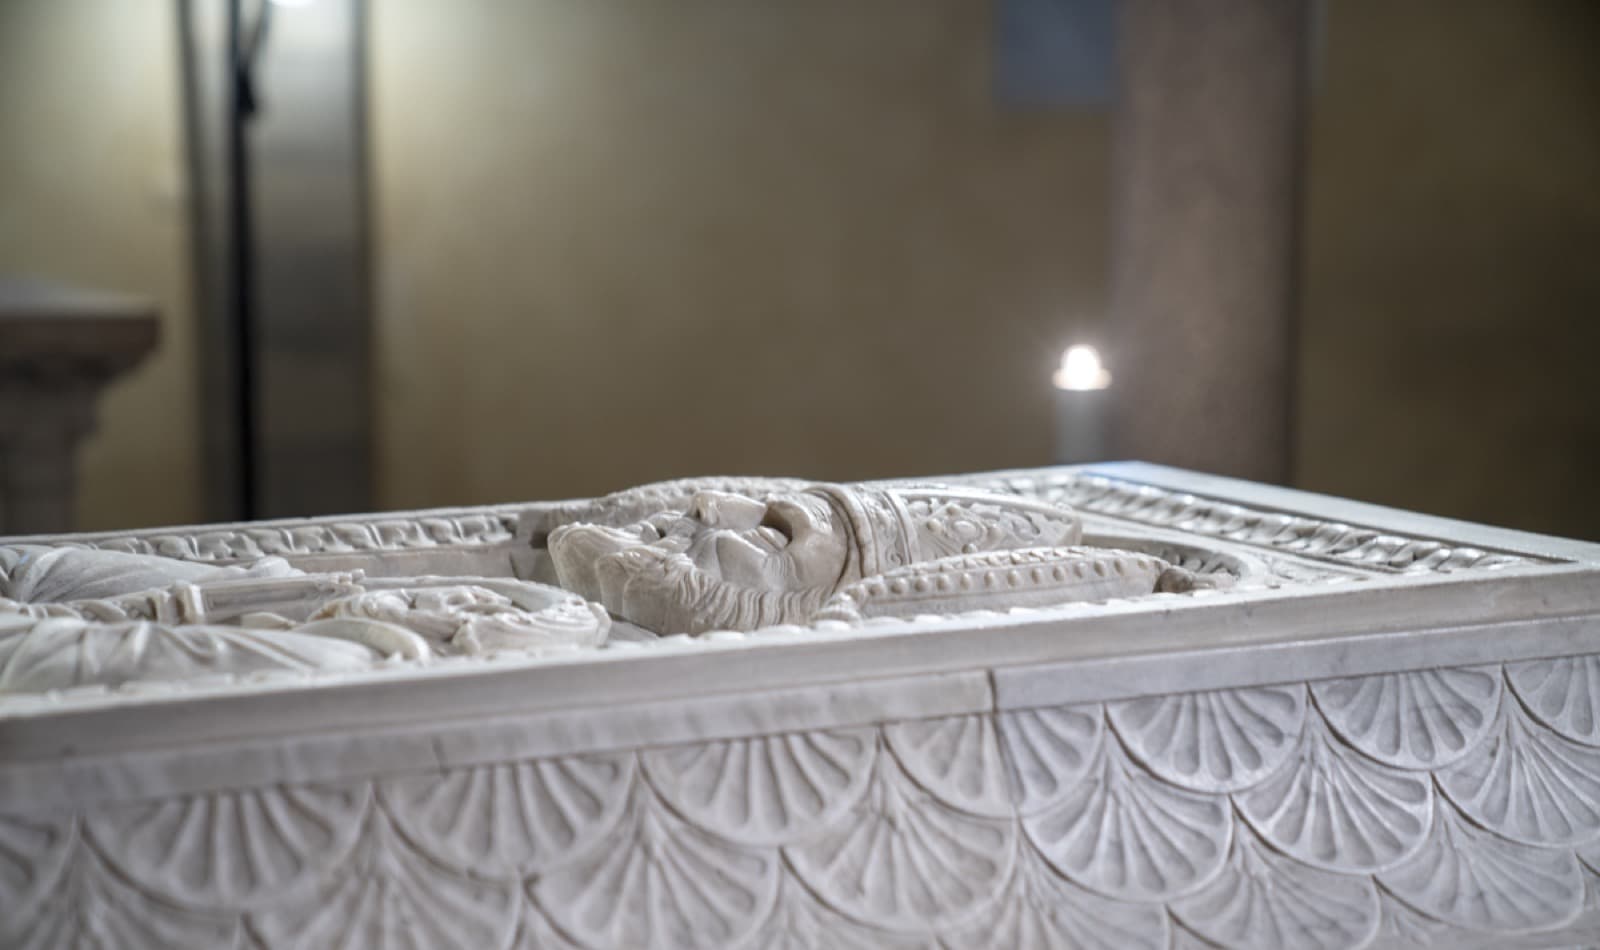 Bobbio, Abbazia di San Colombano, sarcofago del santo Ph. TheCrowdedPlanet